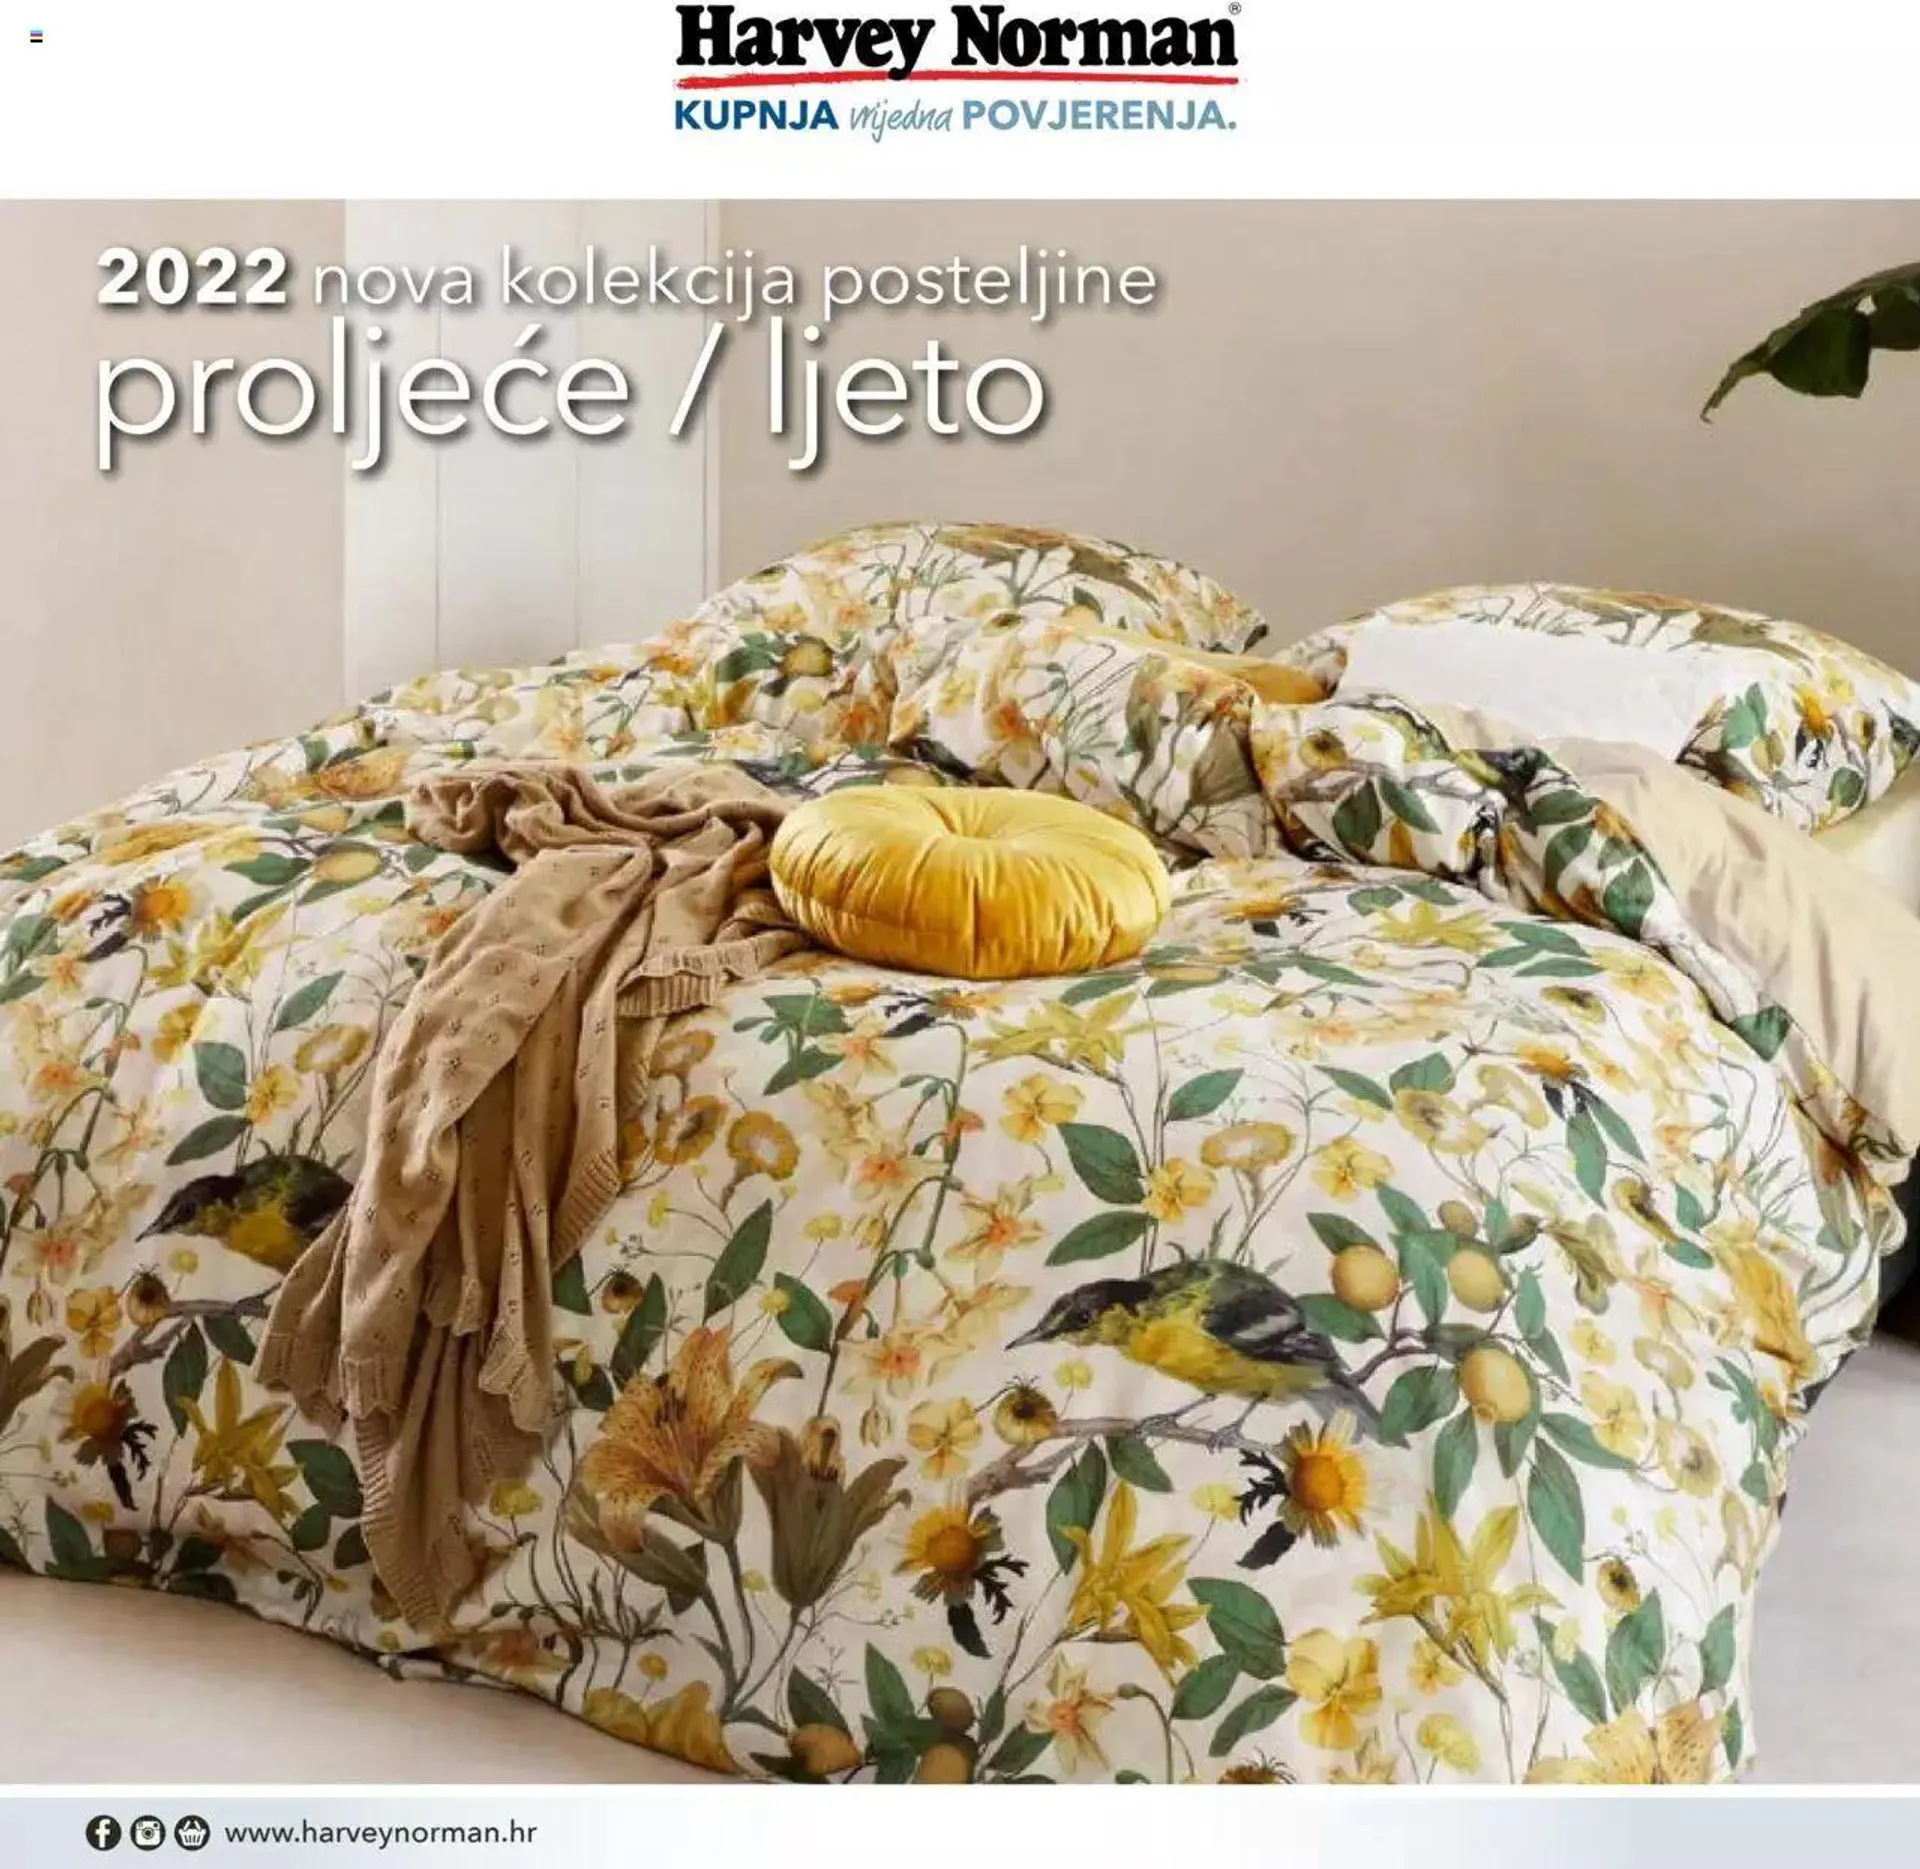 Harvey Norman - Nova kolekcija posteljnine 2022 - 0